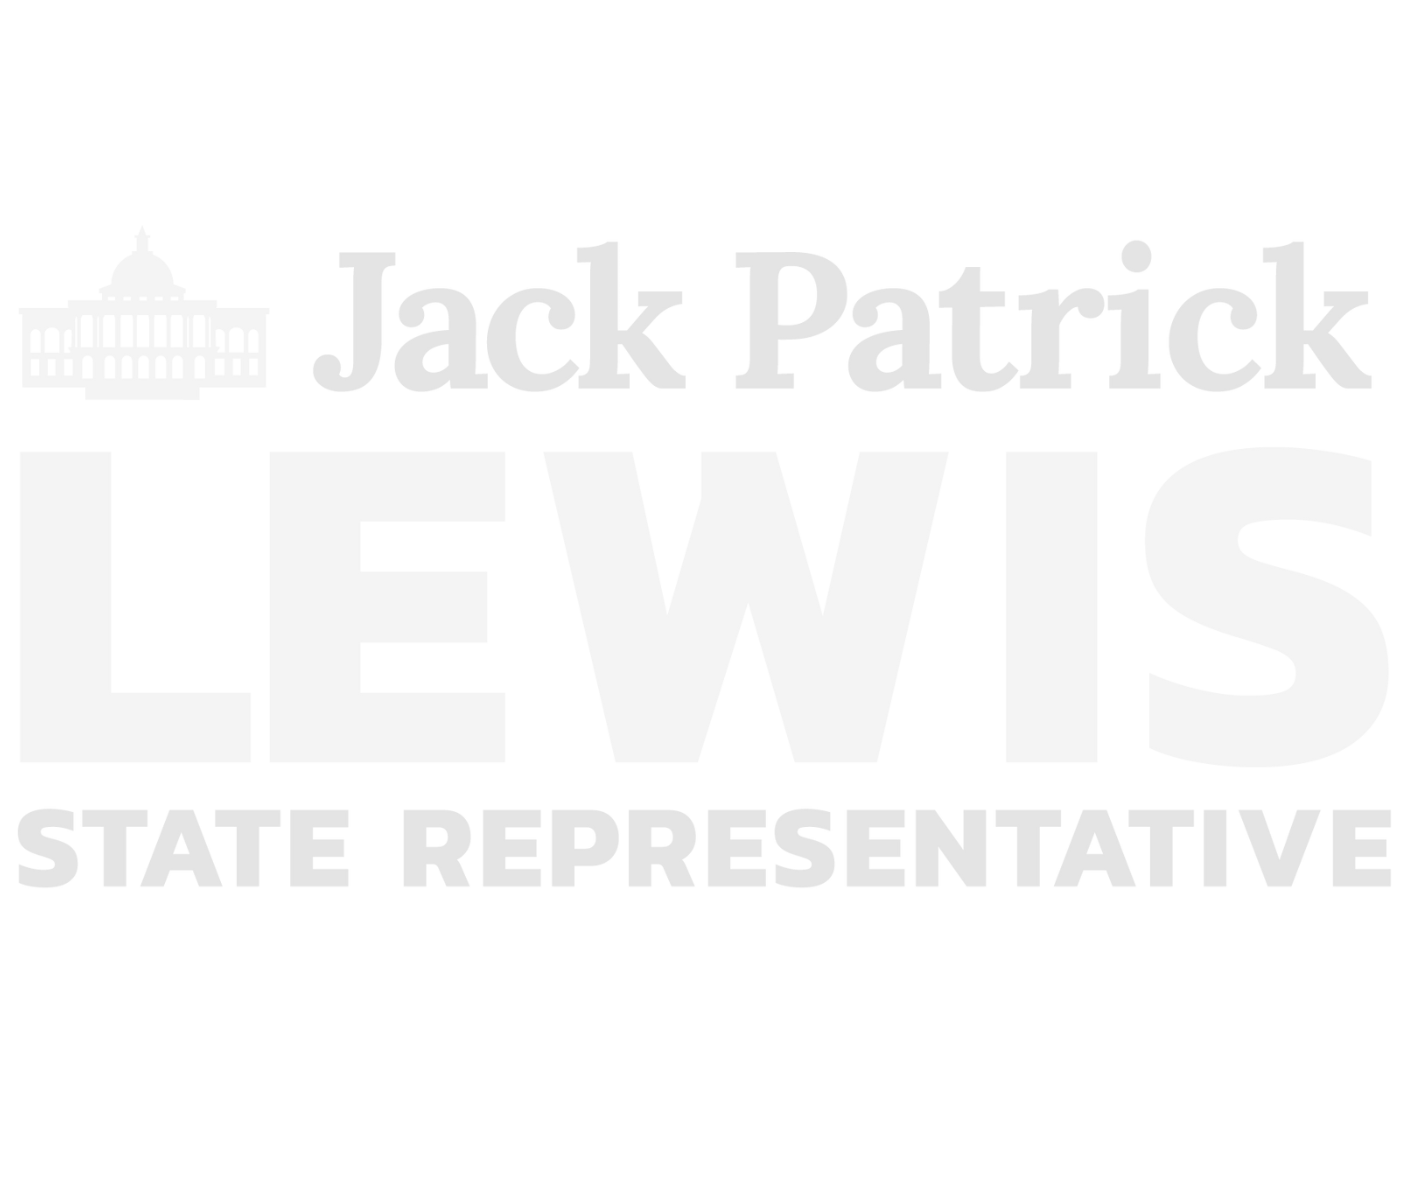 State Representative Jack Patrick Lewis